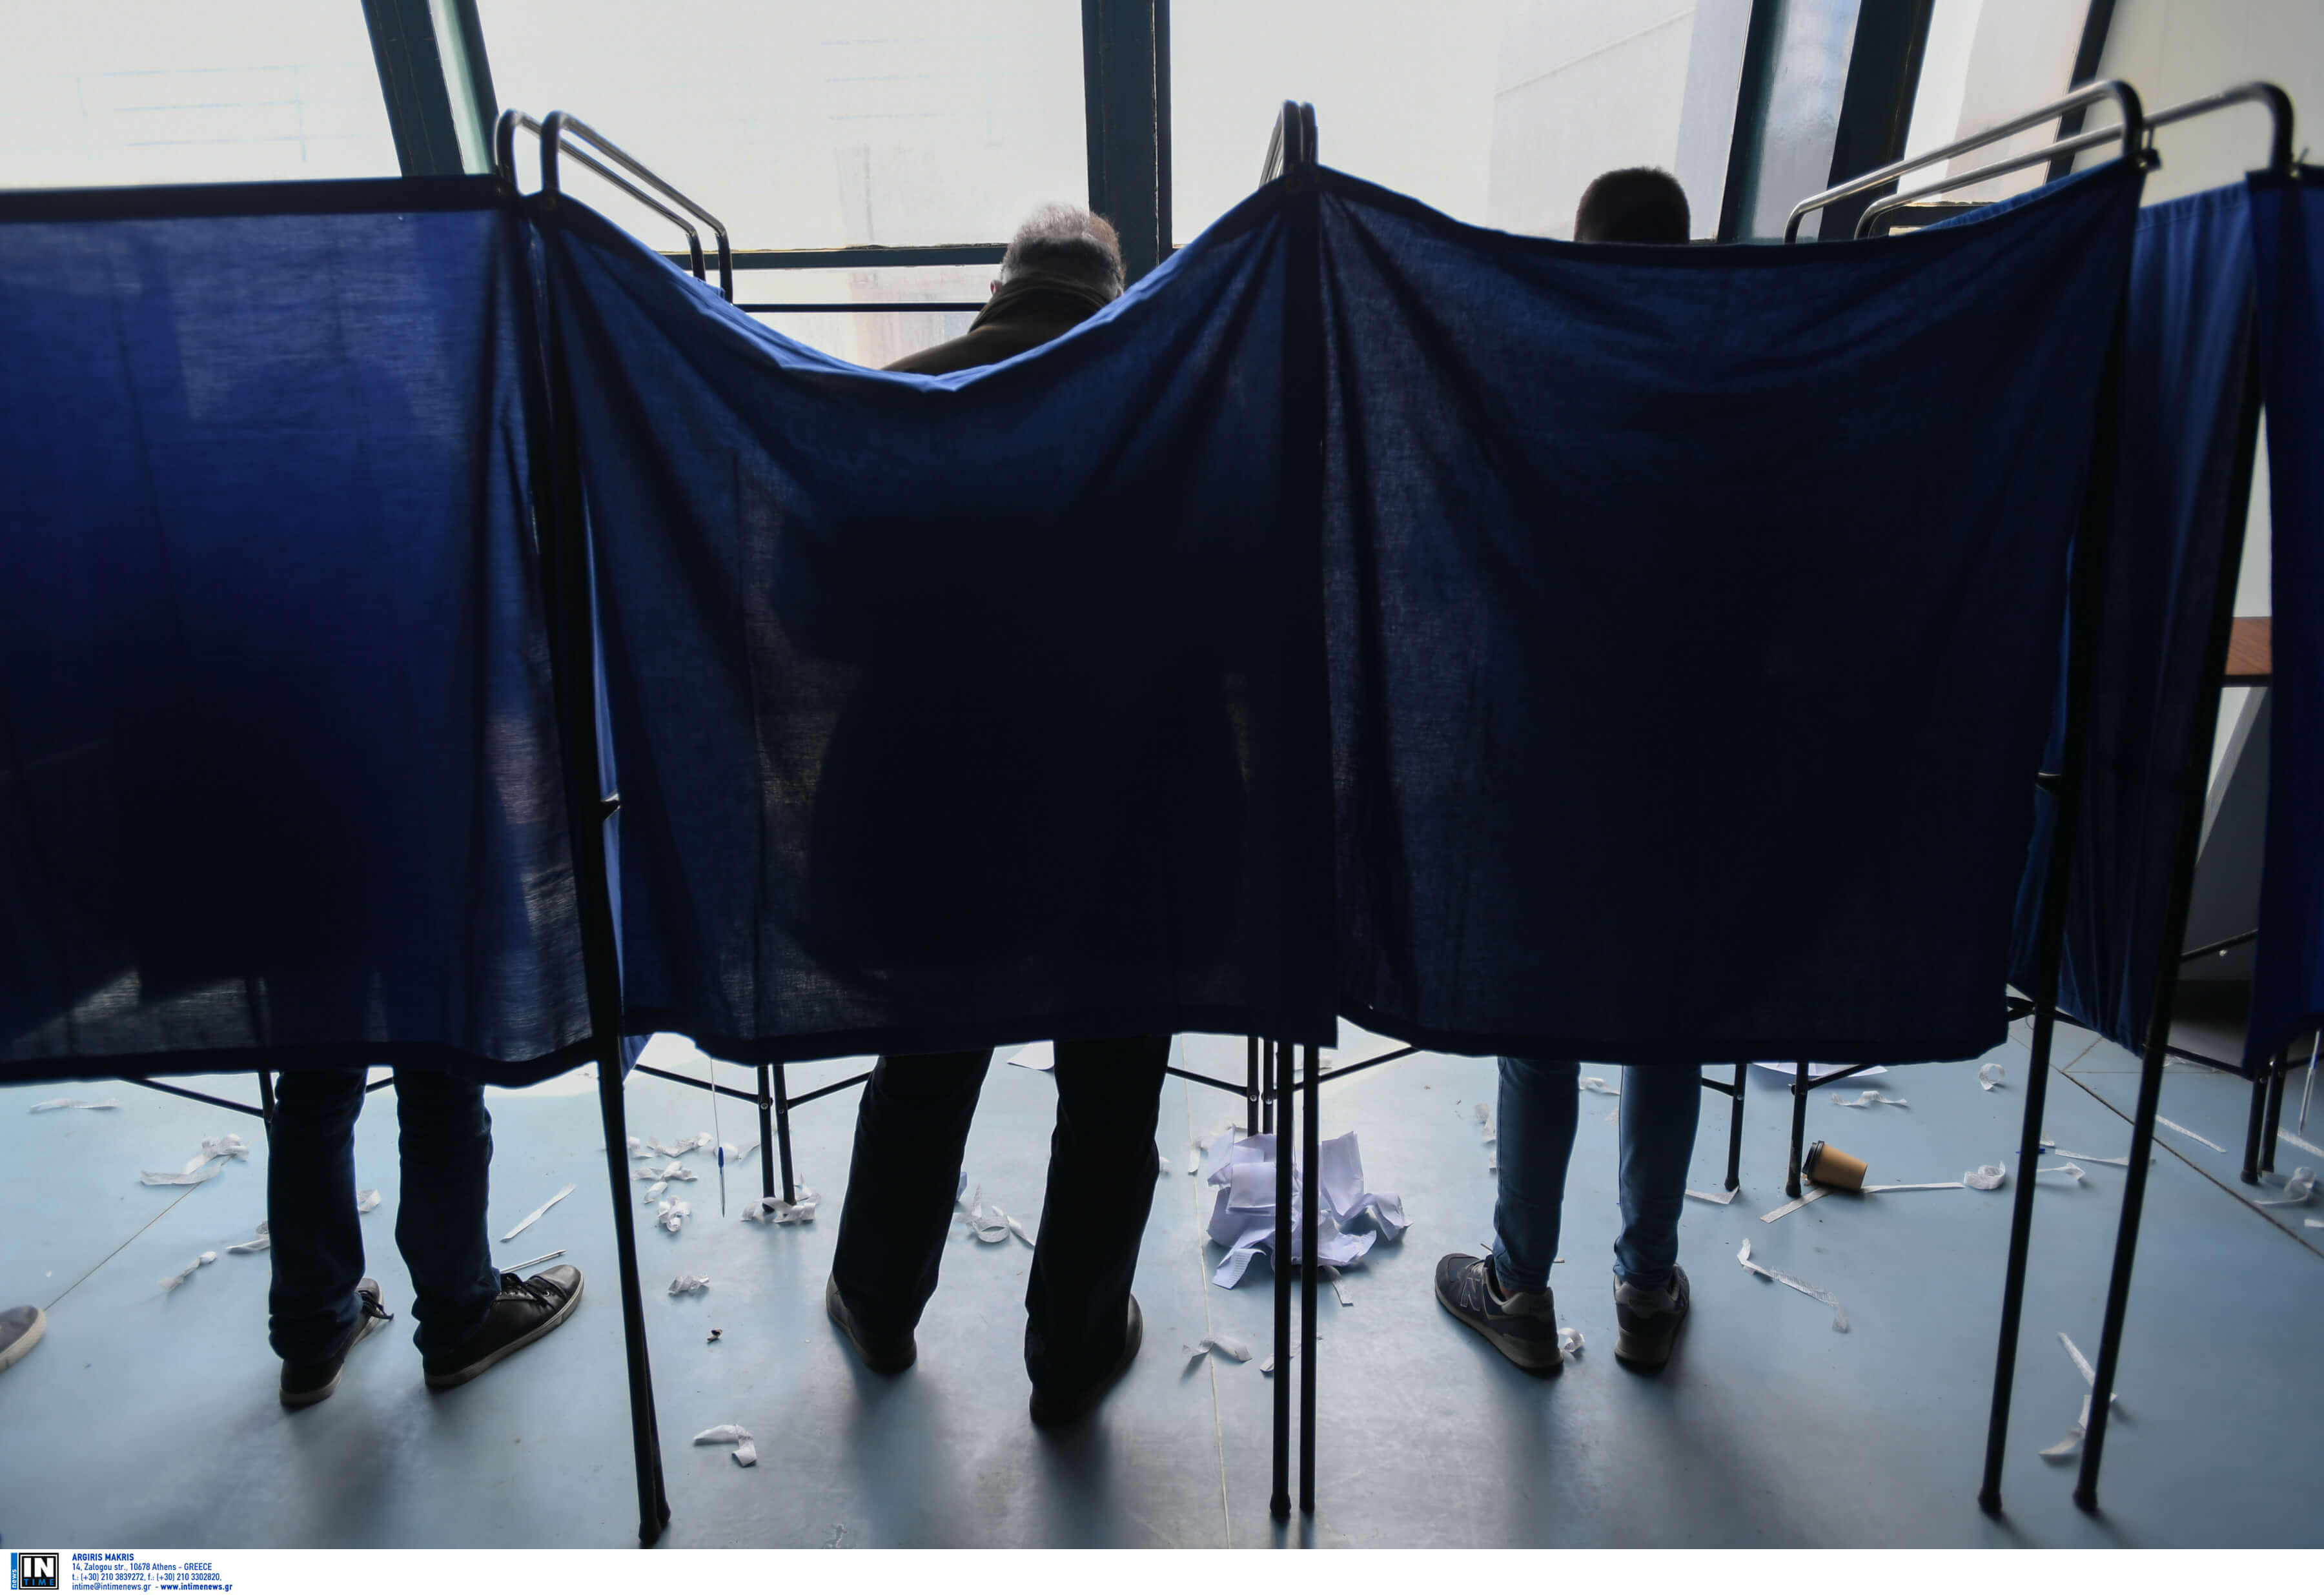 Δημοσκόπηση: Διαφορετικά αποτελέσματα για ευρωεκλογές και εθνικές εκλογές – Μάχη στήθος με στήθος [pics]